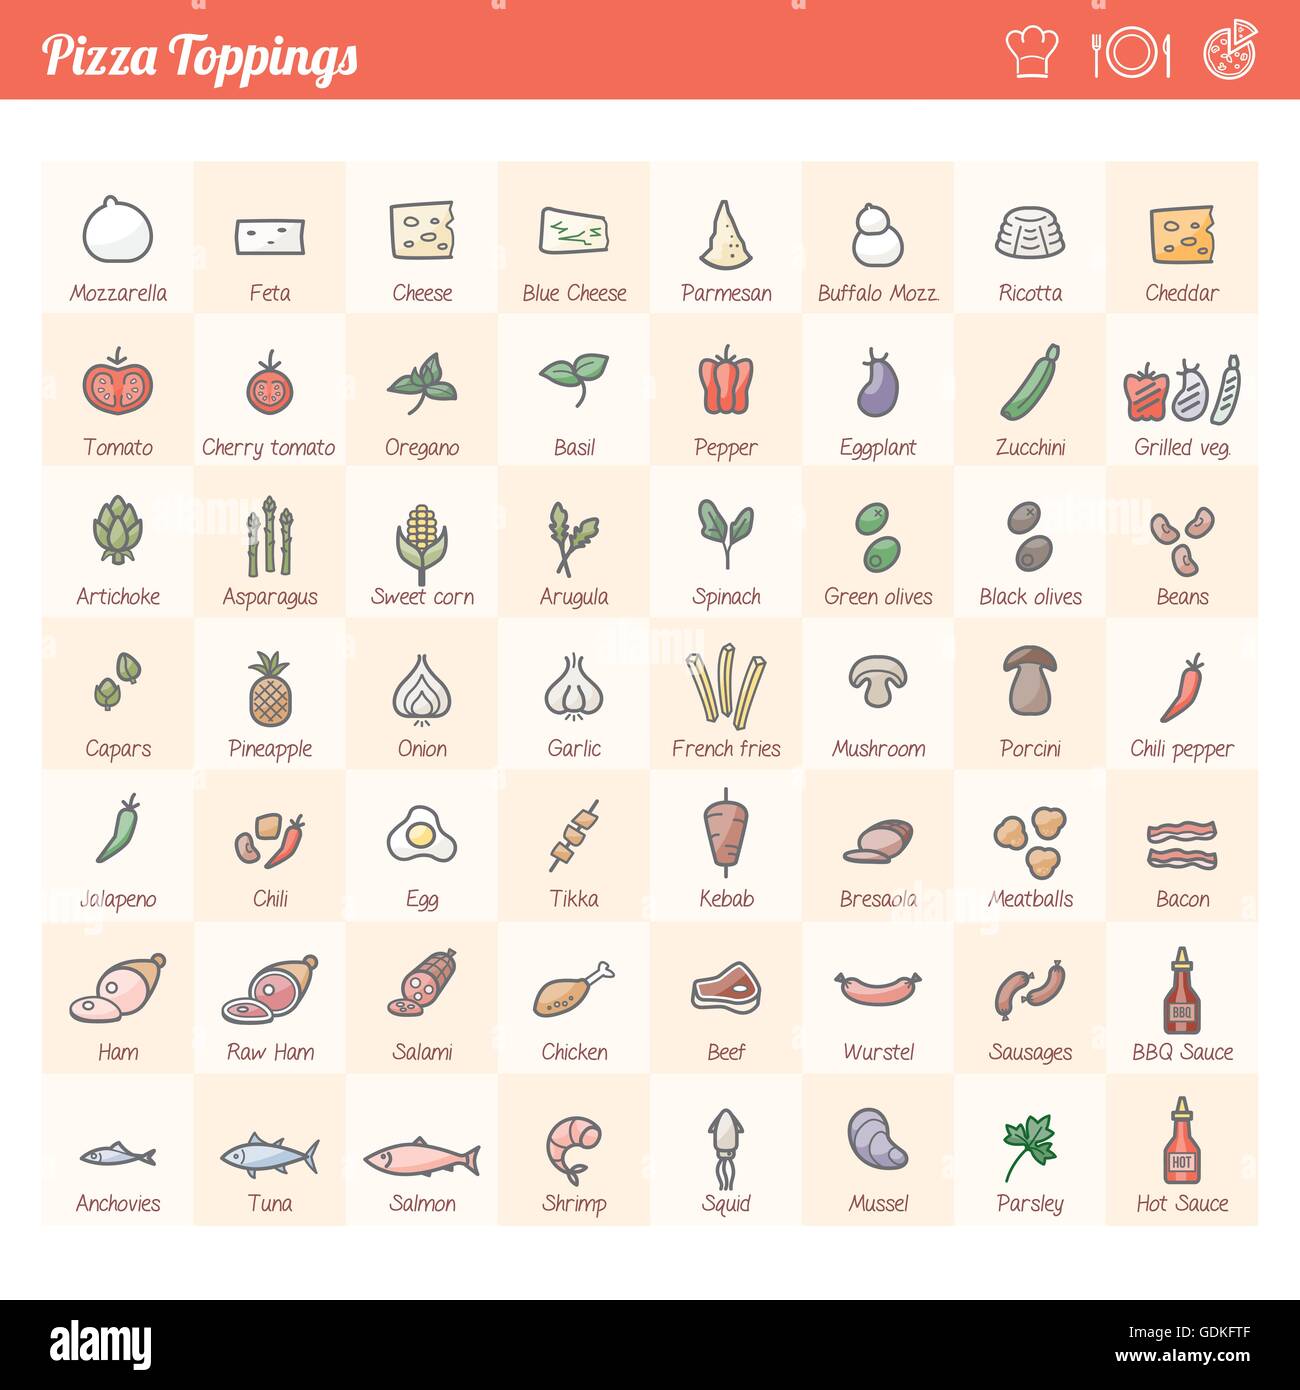 Pizza tradizionale condimenti vari set di icone per diverse ricette Illustrazione Vettoriale